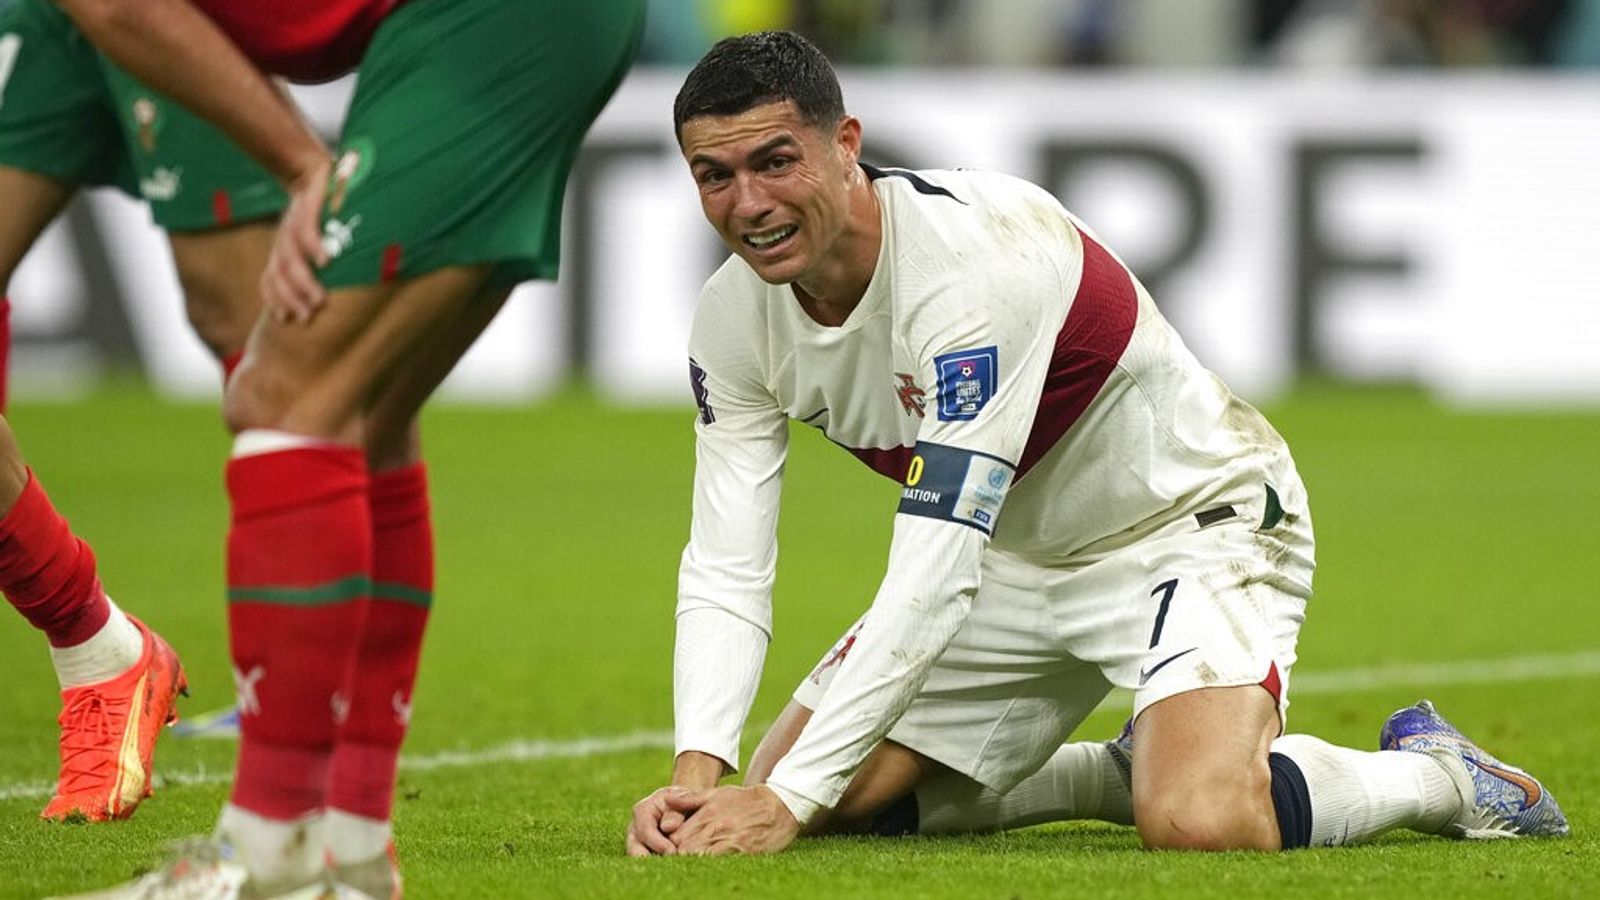 Acertos e erros na Copa do Mundo: Marroquinos em êxtase comemoram vitória histórica sobre Portugal enquanto as emoções de Cristiano Ronaldo correm soltas |  Notícias de futebol